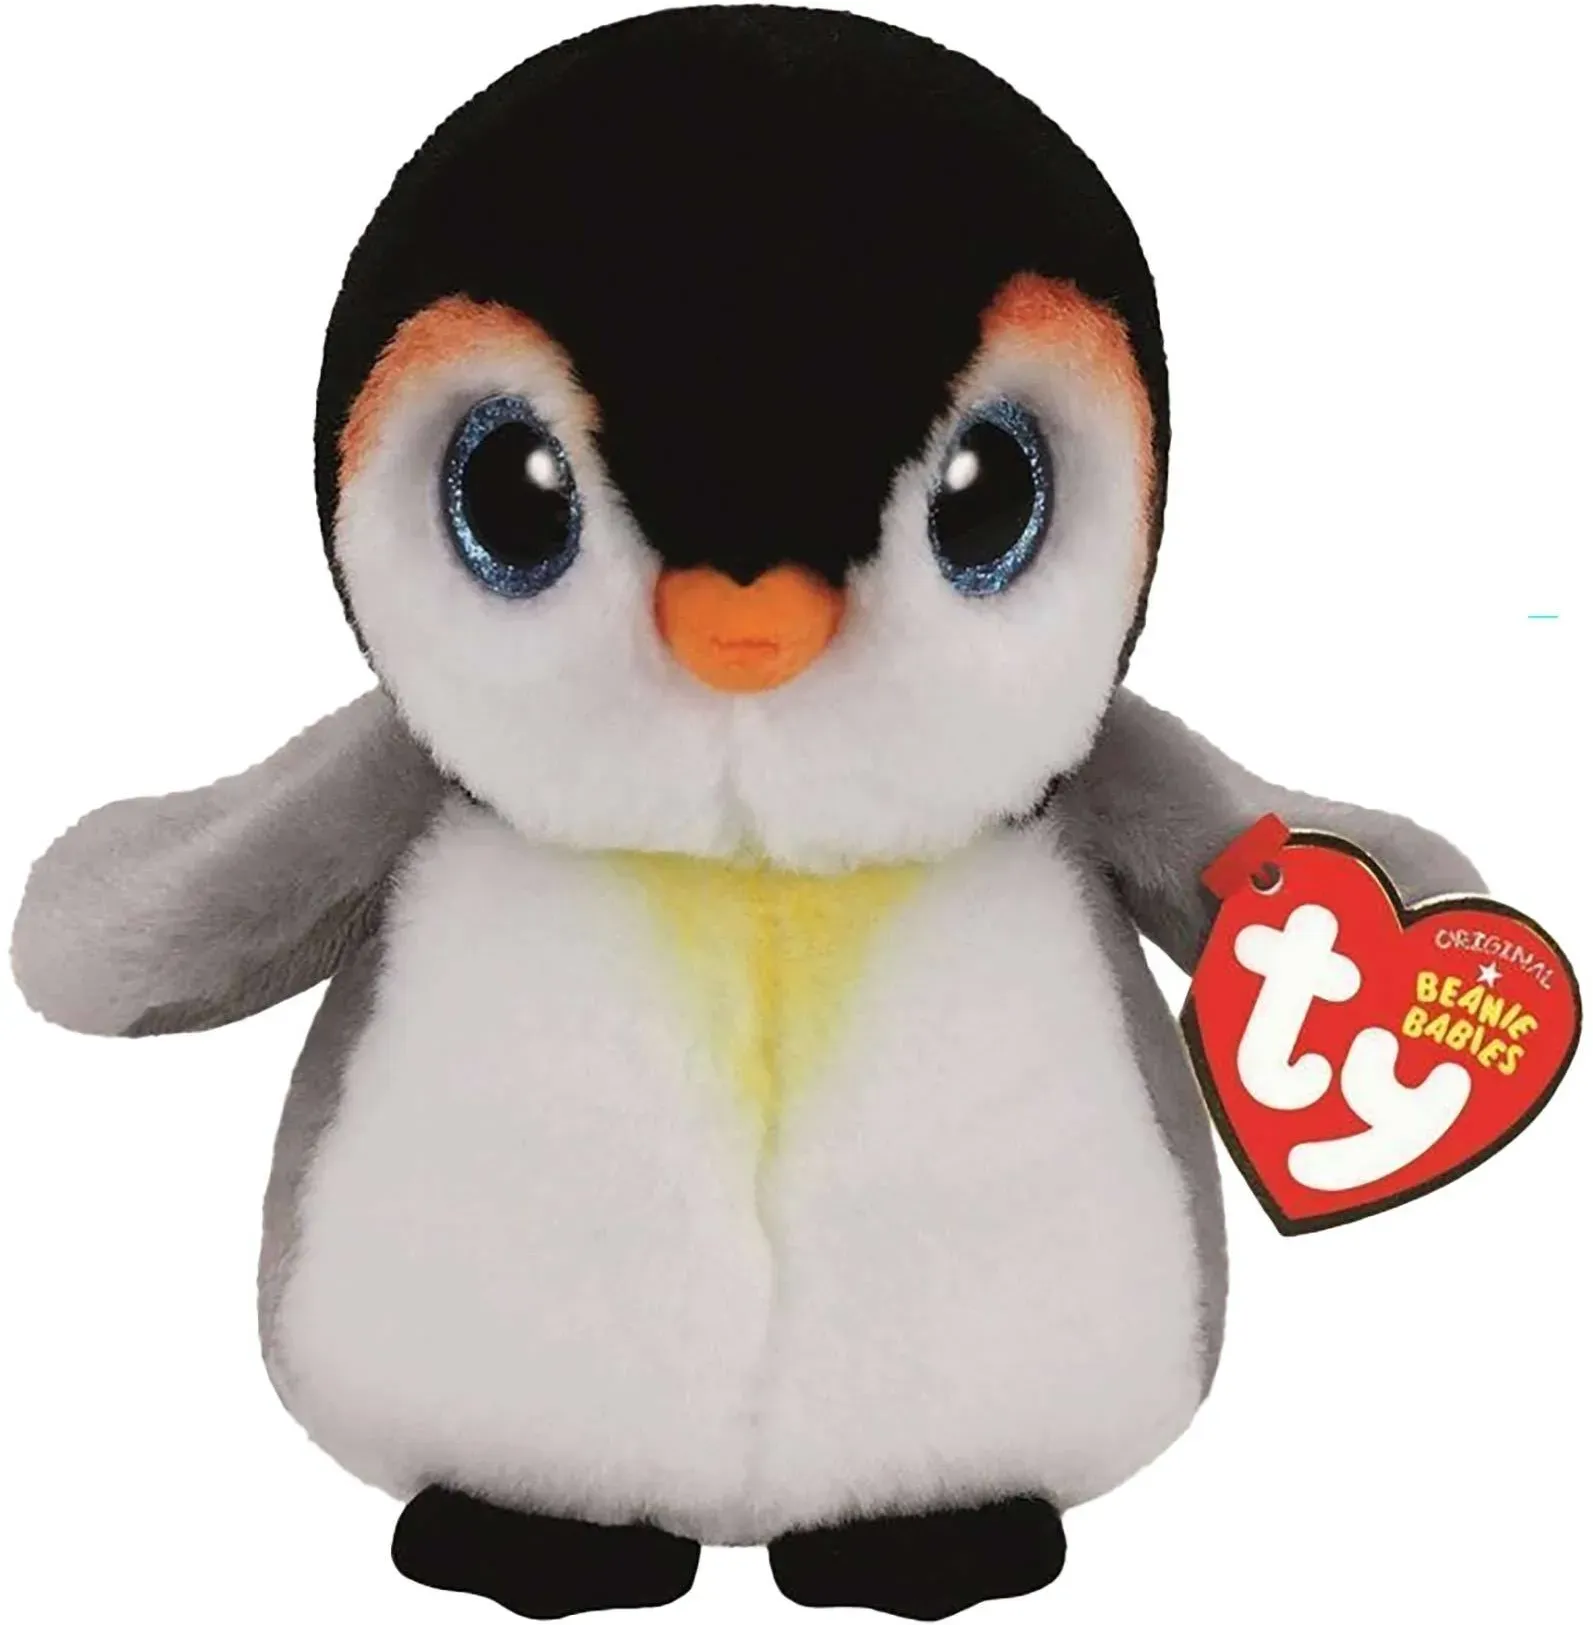 TY Deutschland - Pongo Pinguin - Beanie Babies - Reg